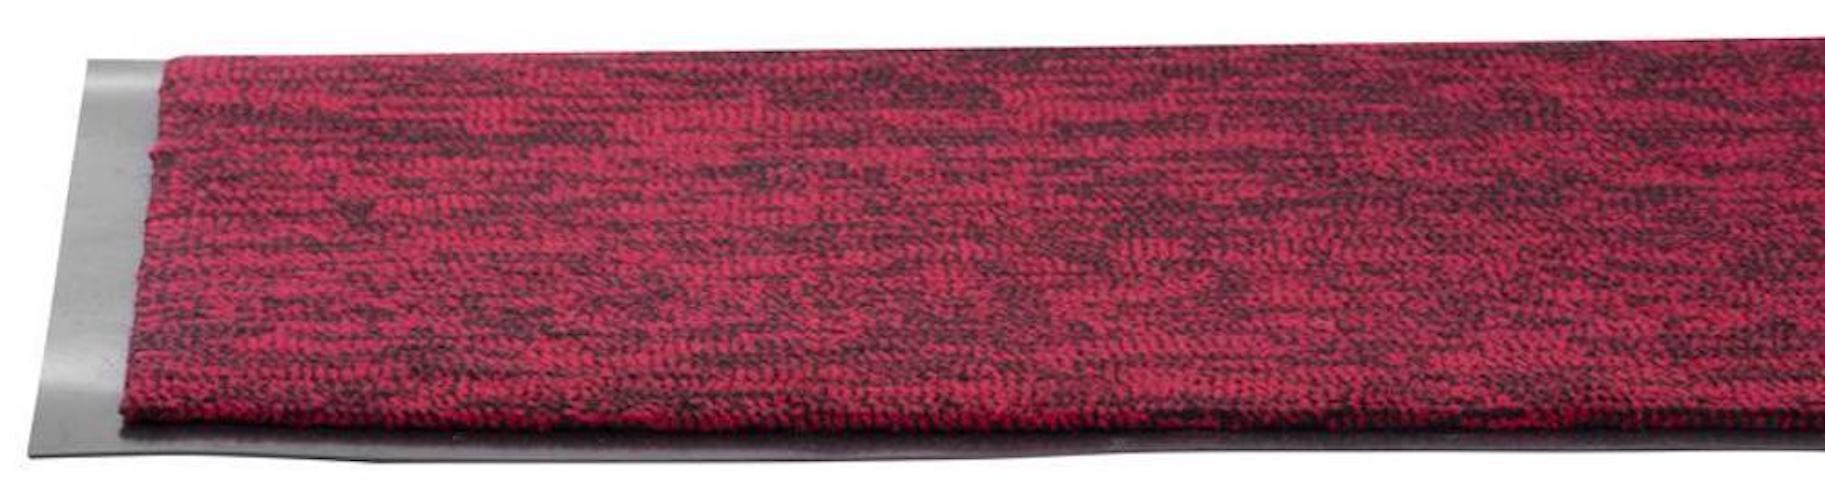 PROREGAL Fußmatte, Schmutzfangmatte 40x60cm, Schwarz-rot